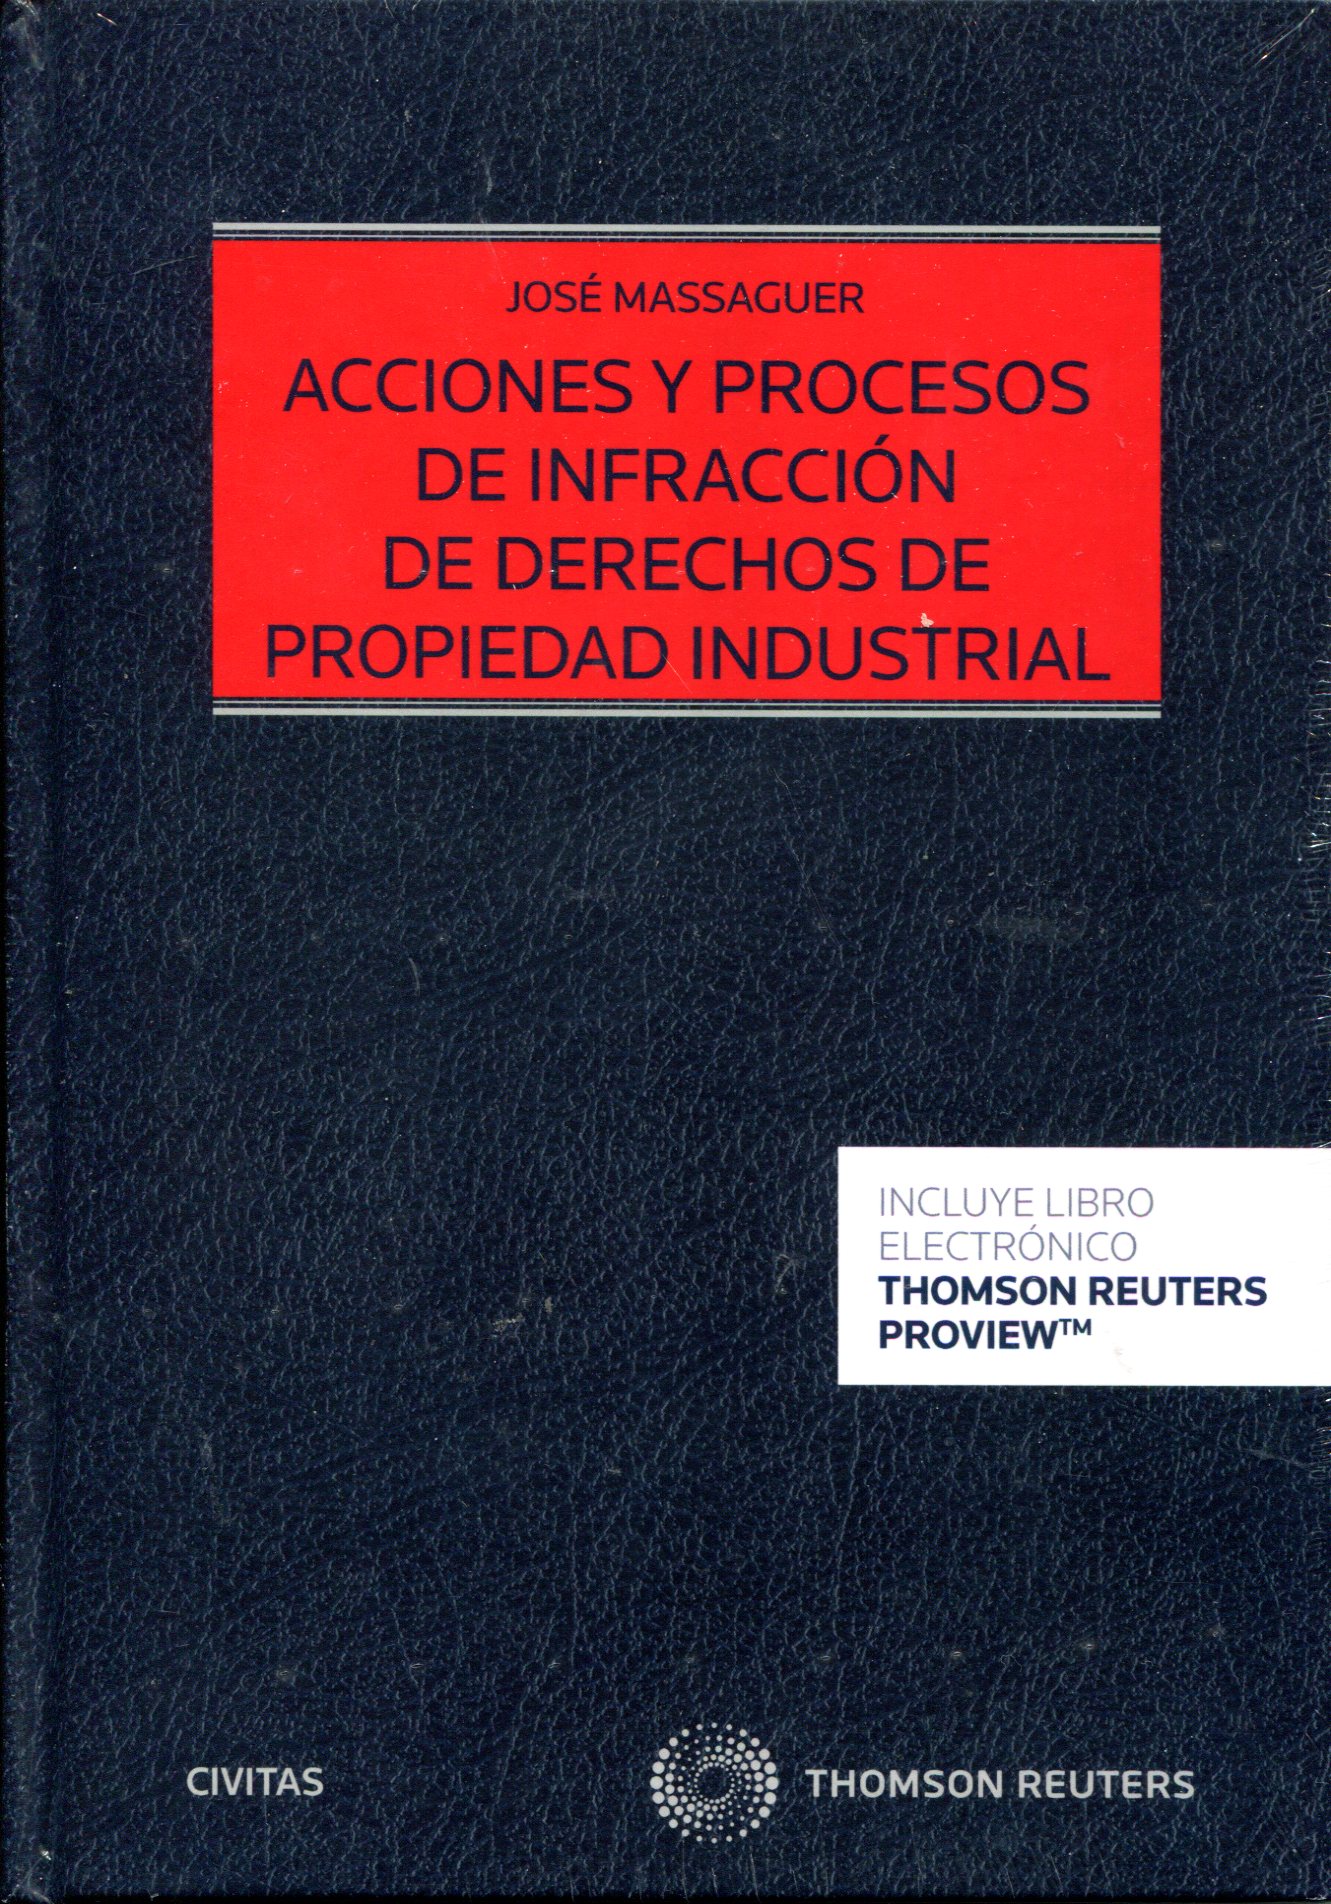 Imagen de portada del libro Acciones y procesos de infracción de derechos de propiedad industrial